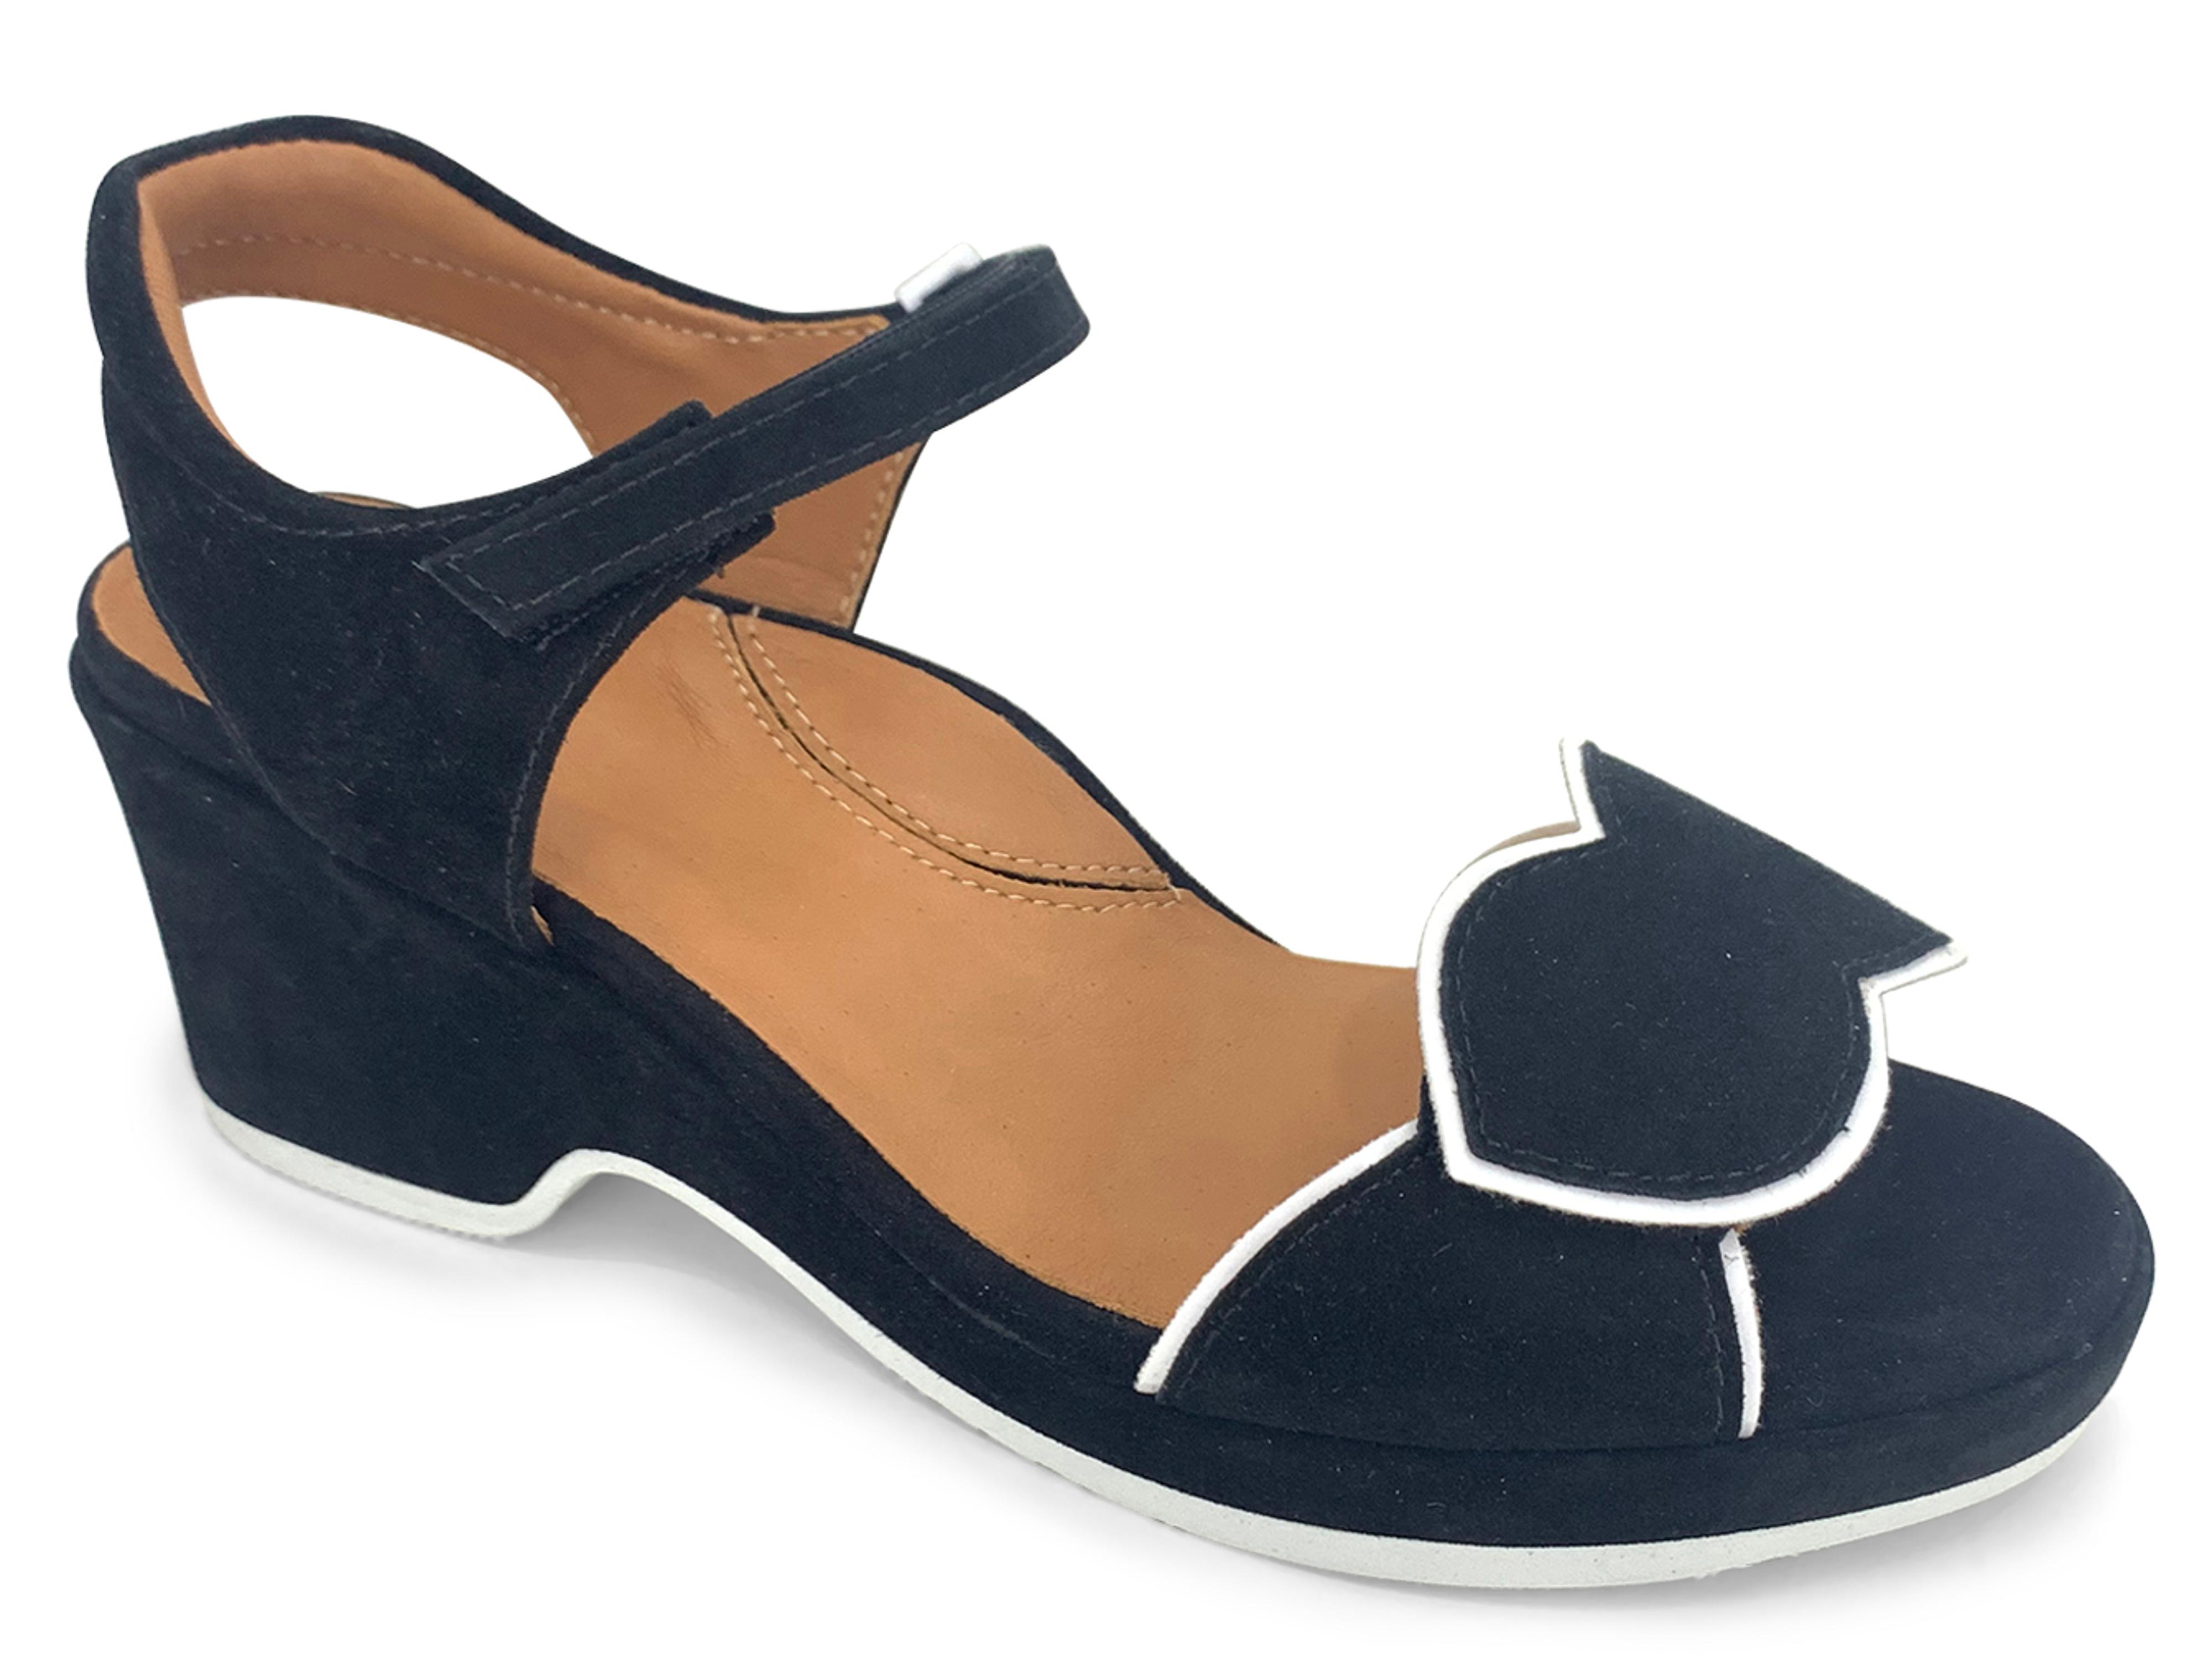 Bella Comforto Dalia Sandal Black White : The Shoe Spa